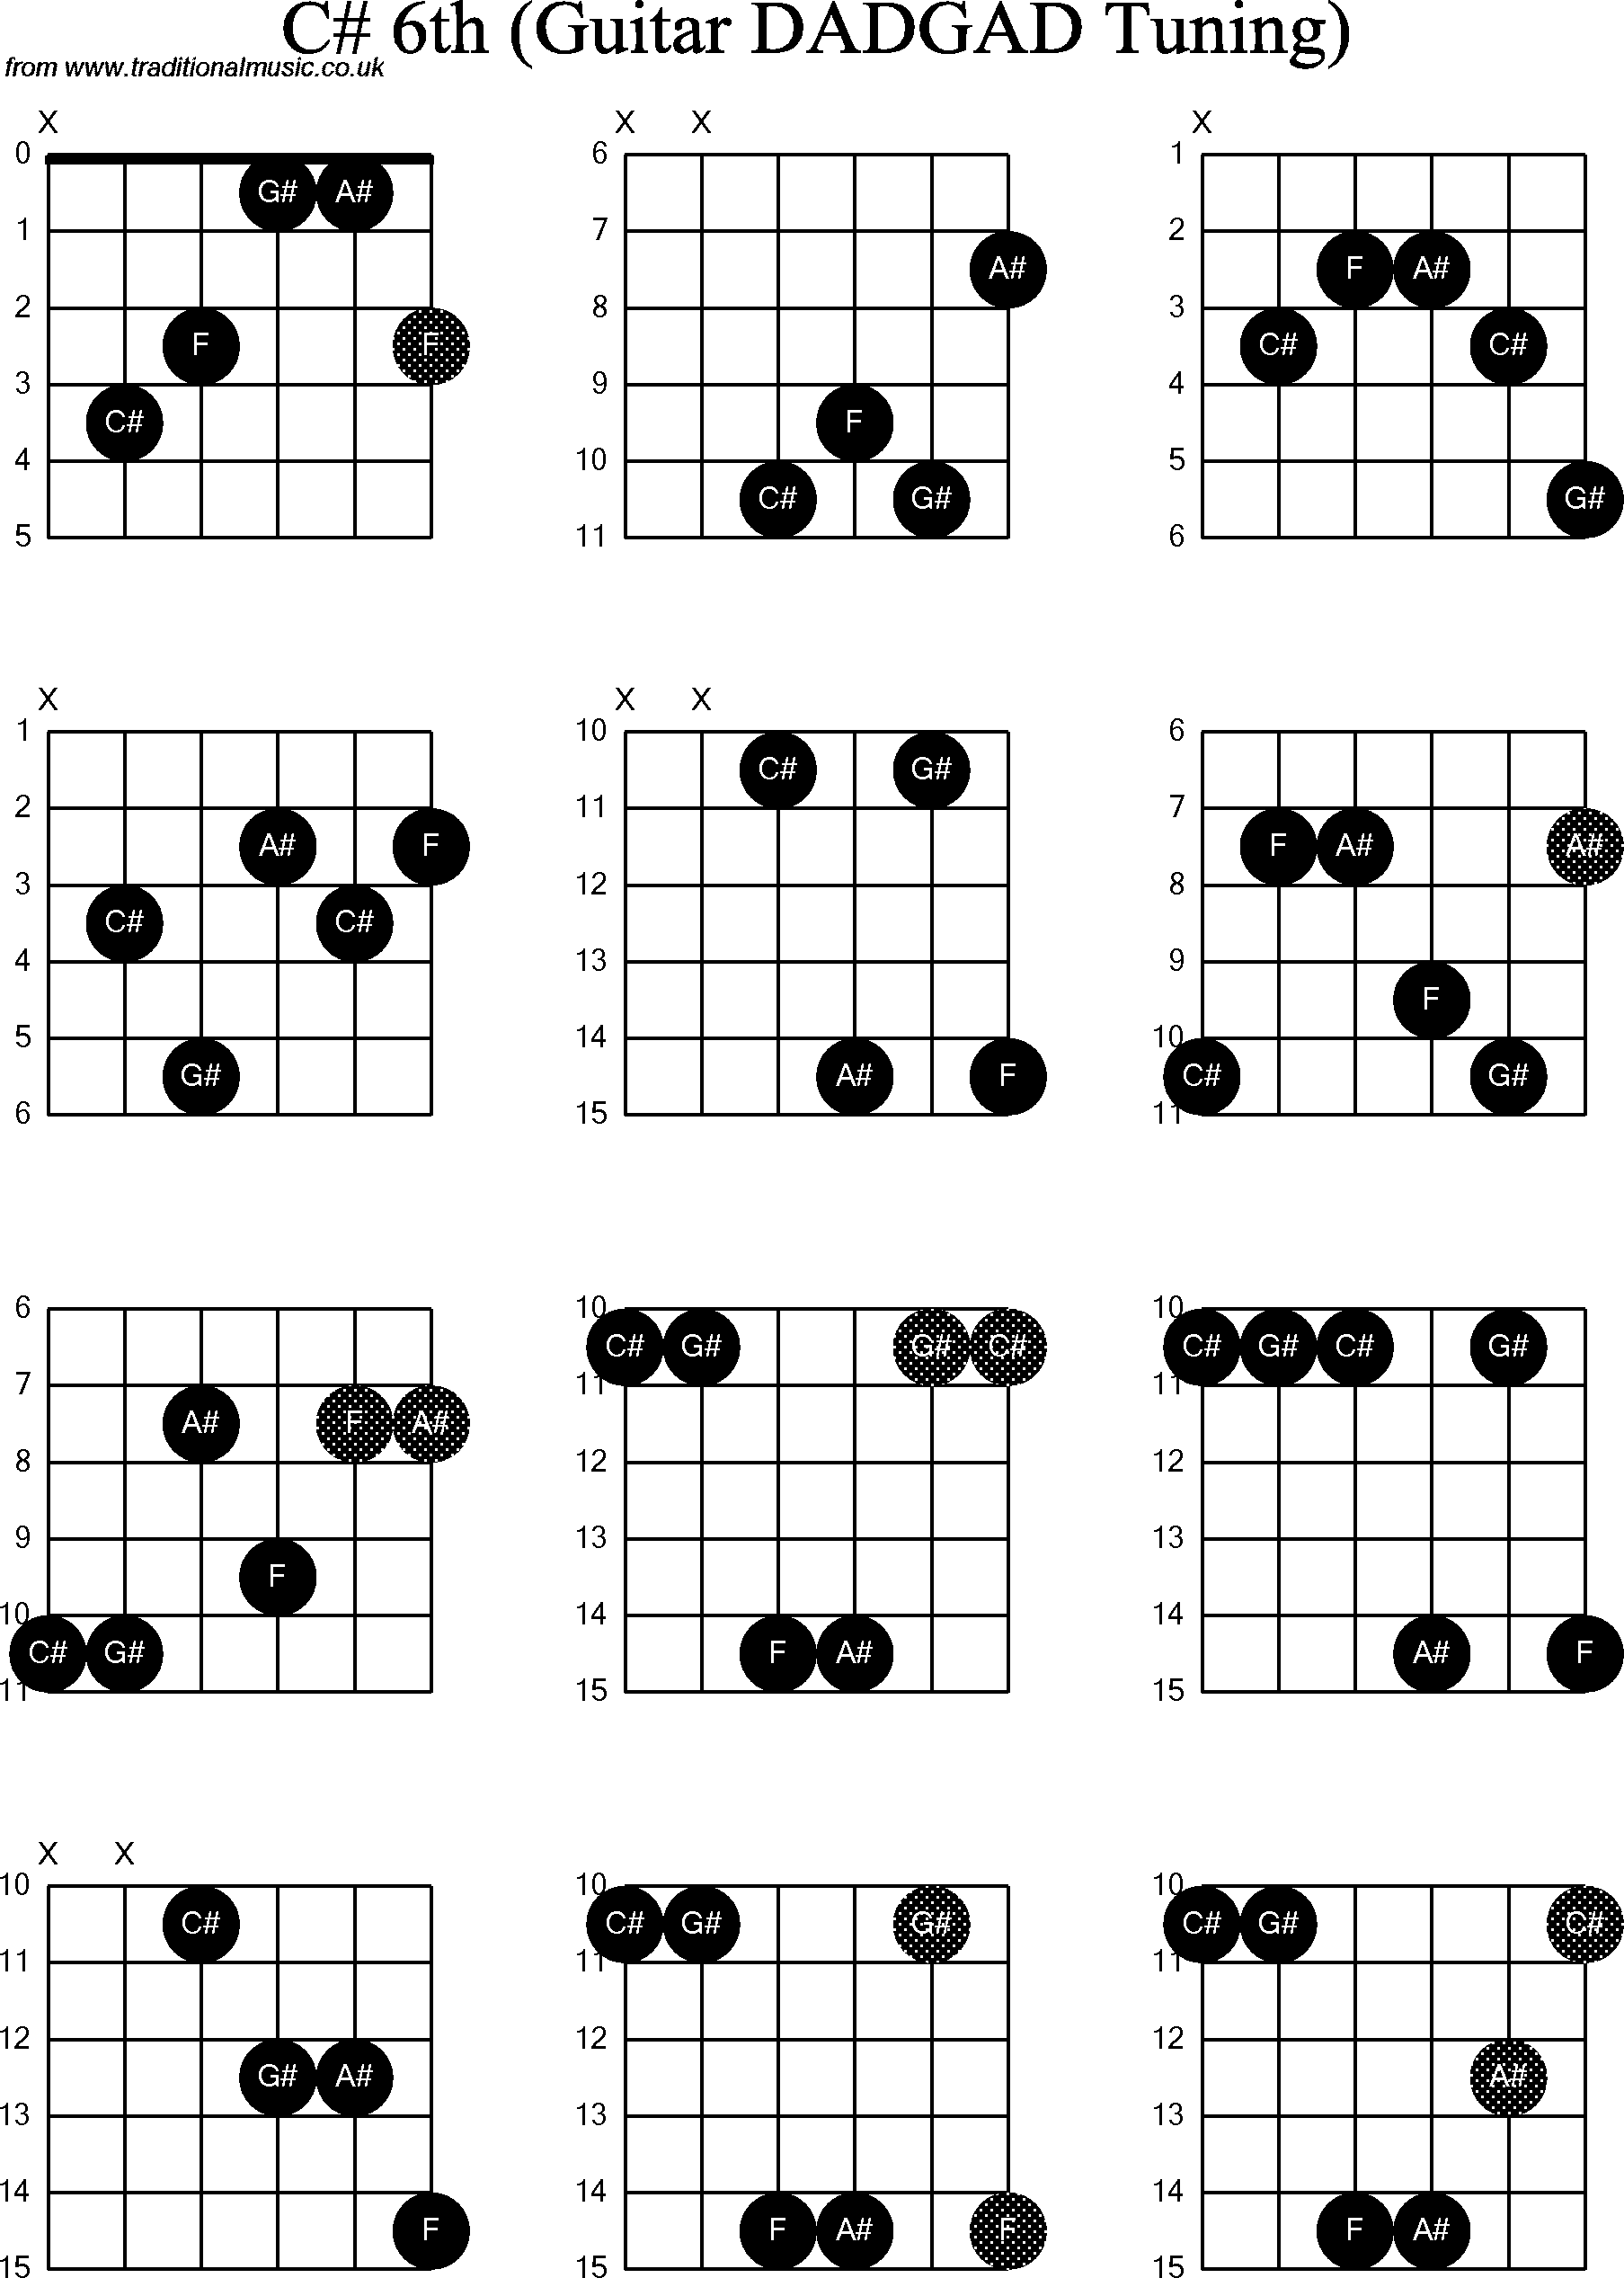 Chord Diagrams for D Modal Guitar(DADGAD), C Sharp6th